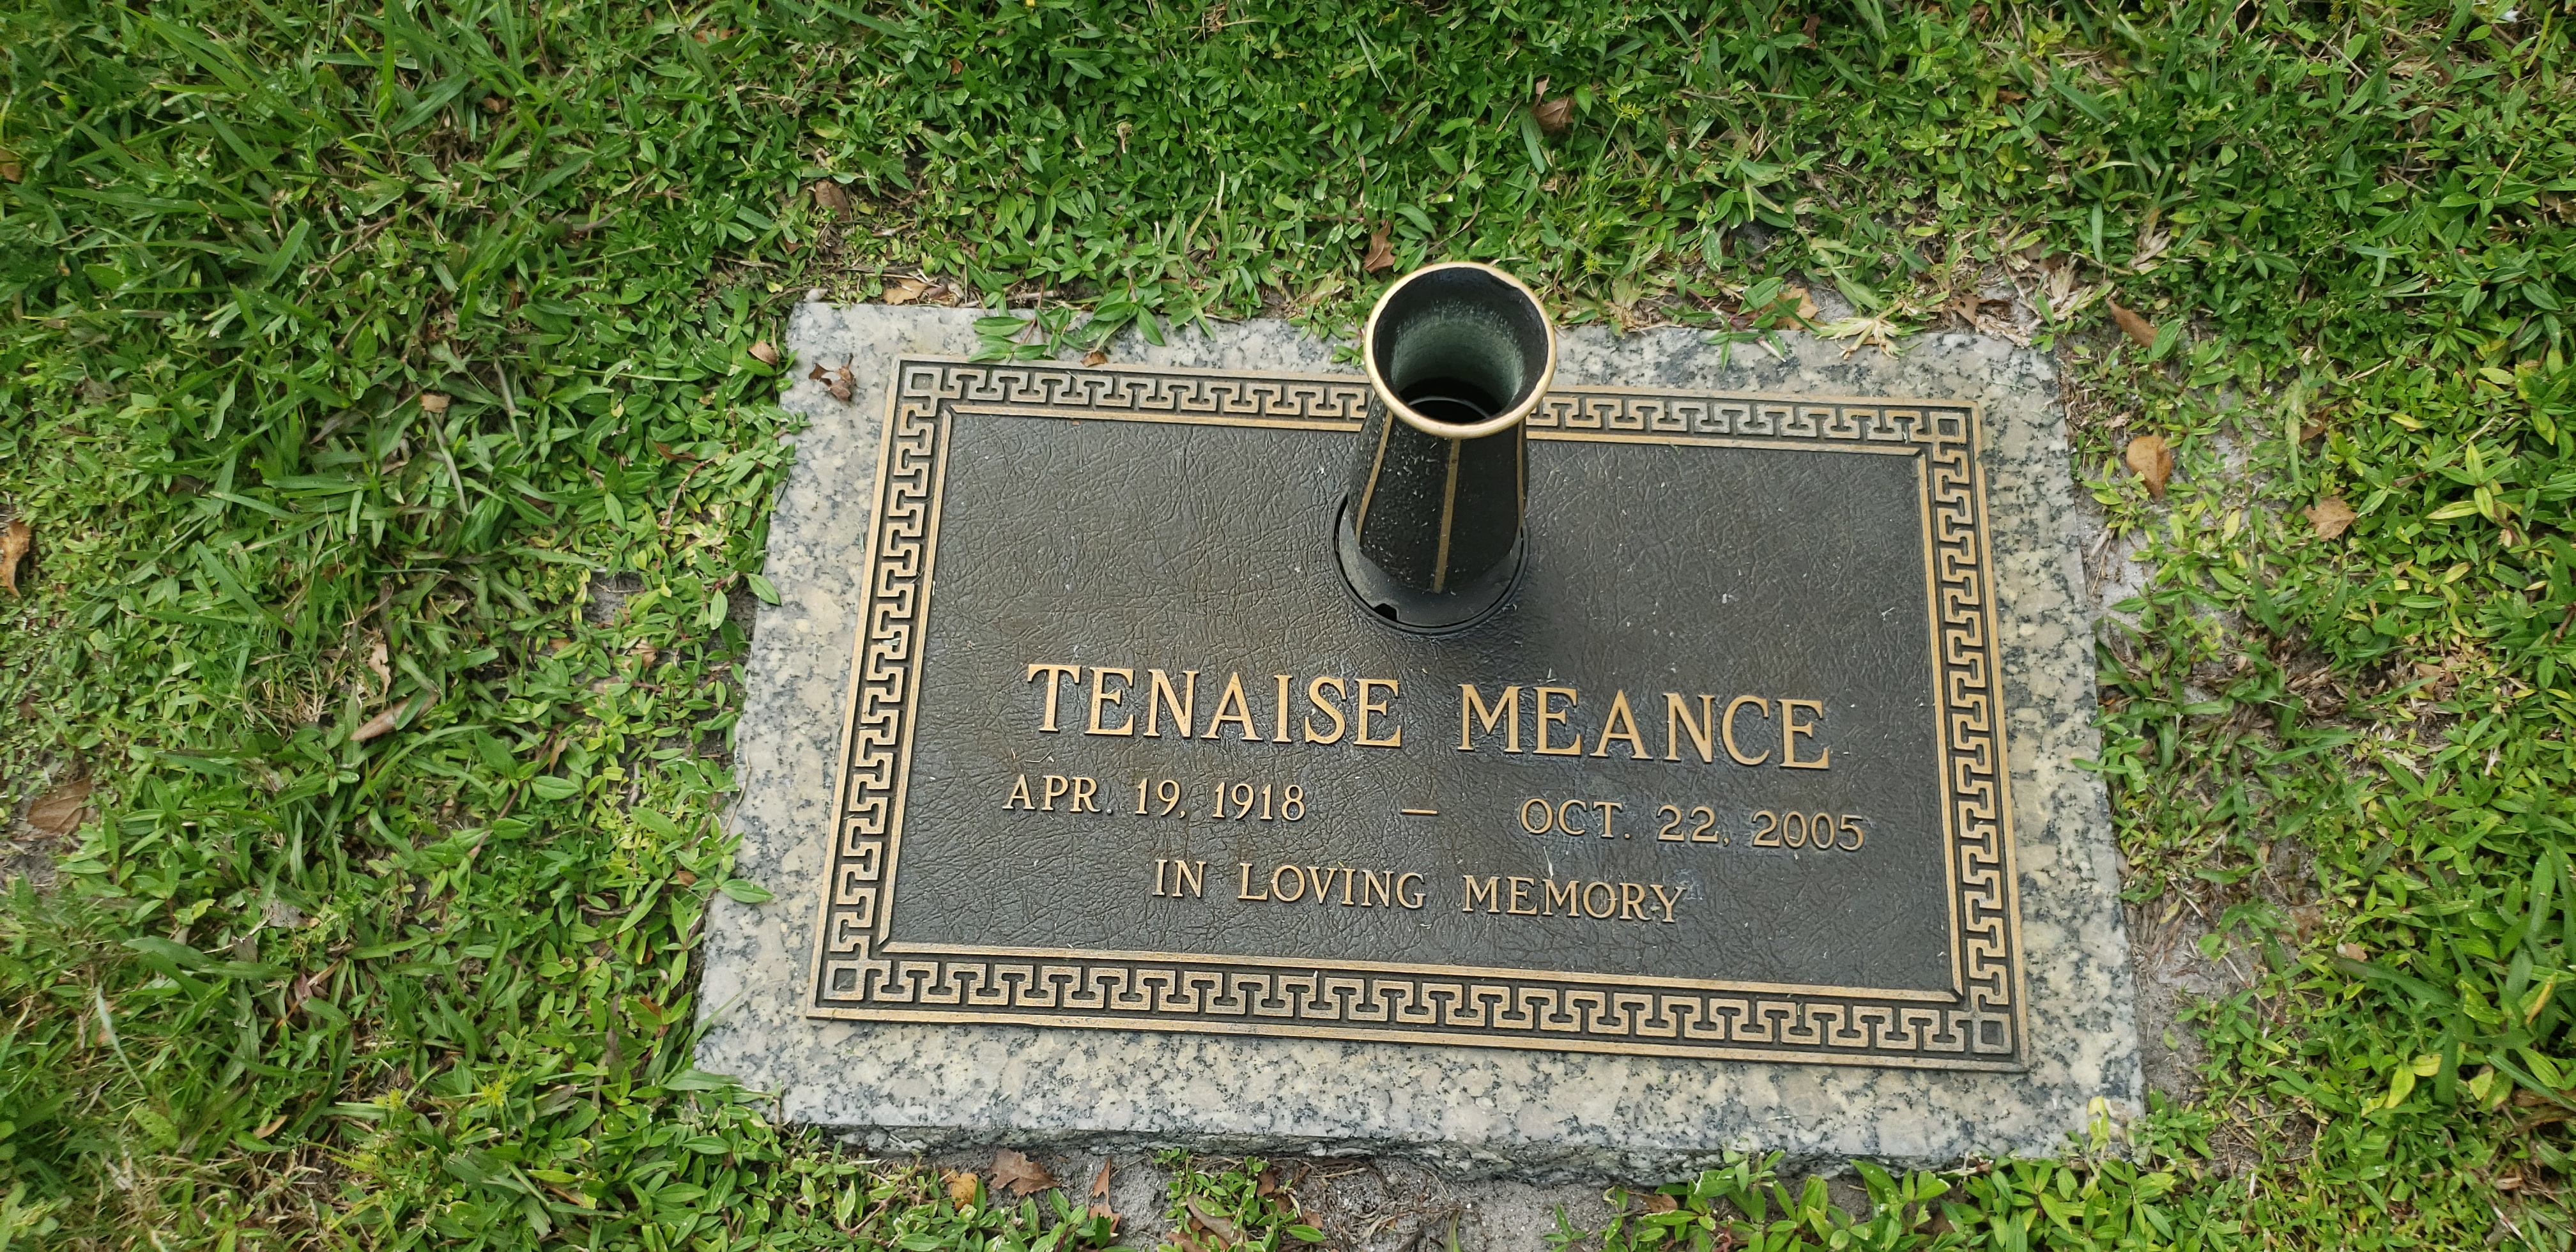 Tenaise Meance